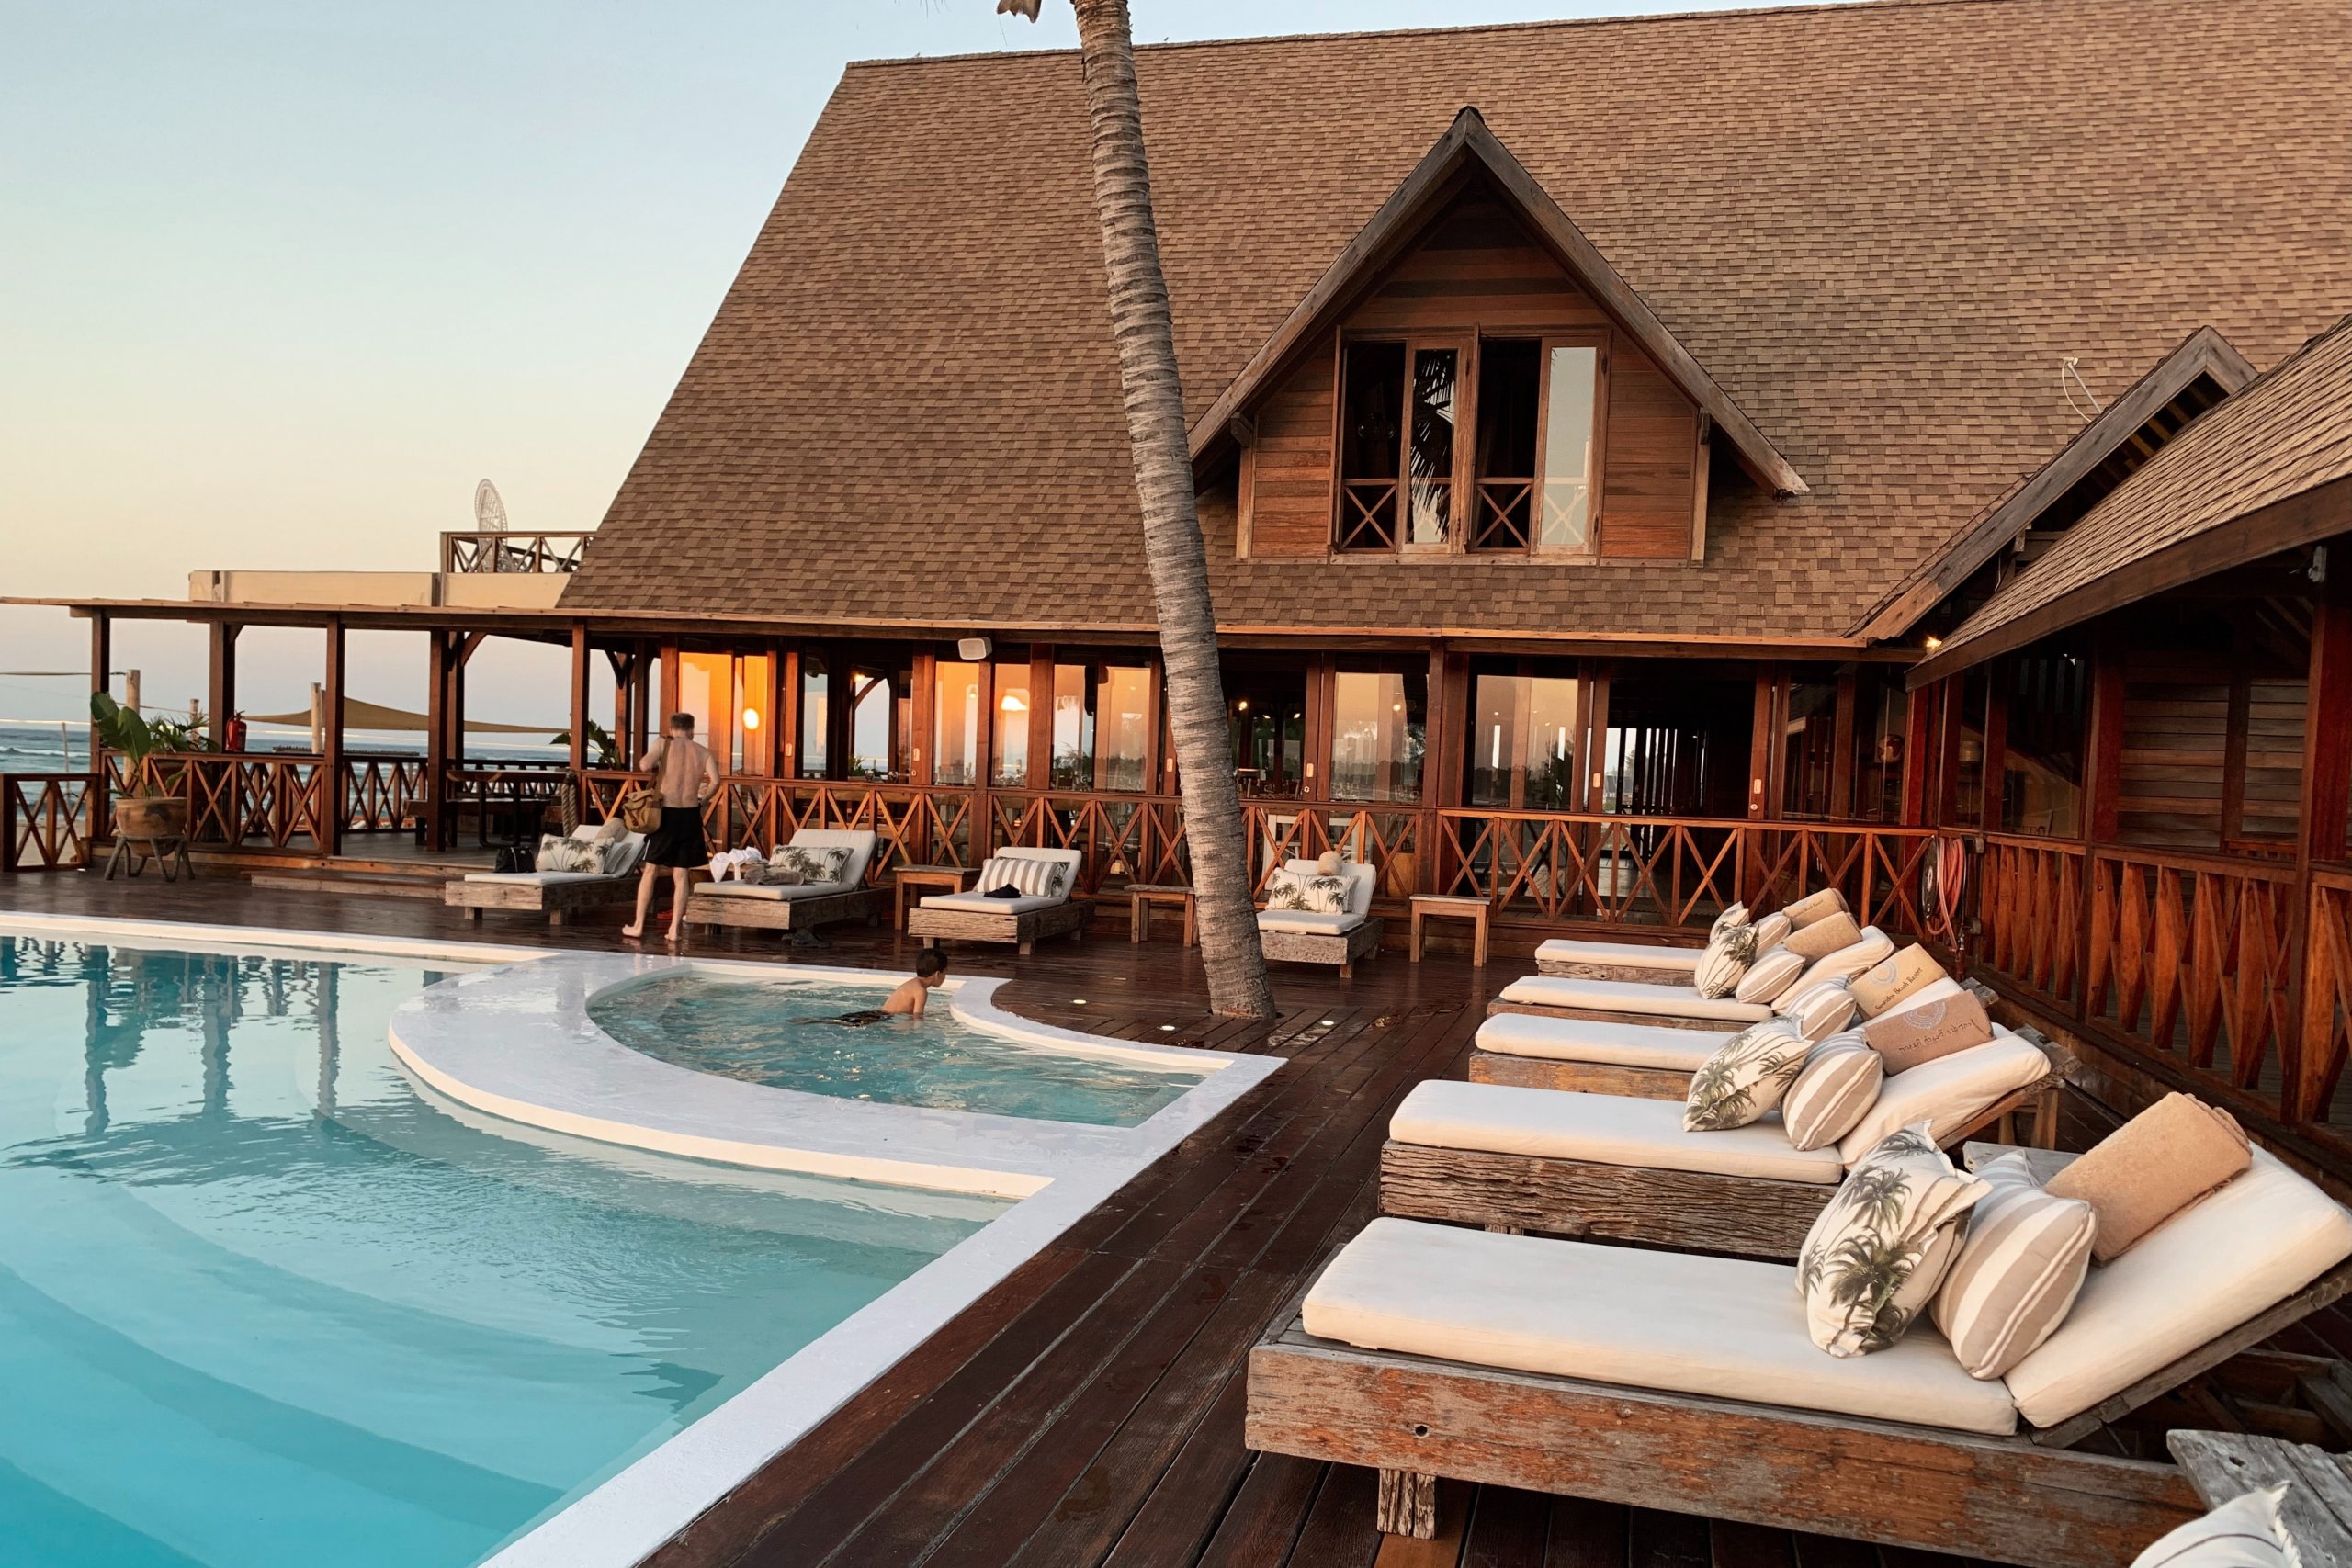 Resort perto da praia, com piscina e casa com estrutura de madeira. Imagem disponível no Unsplash